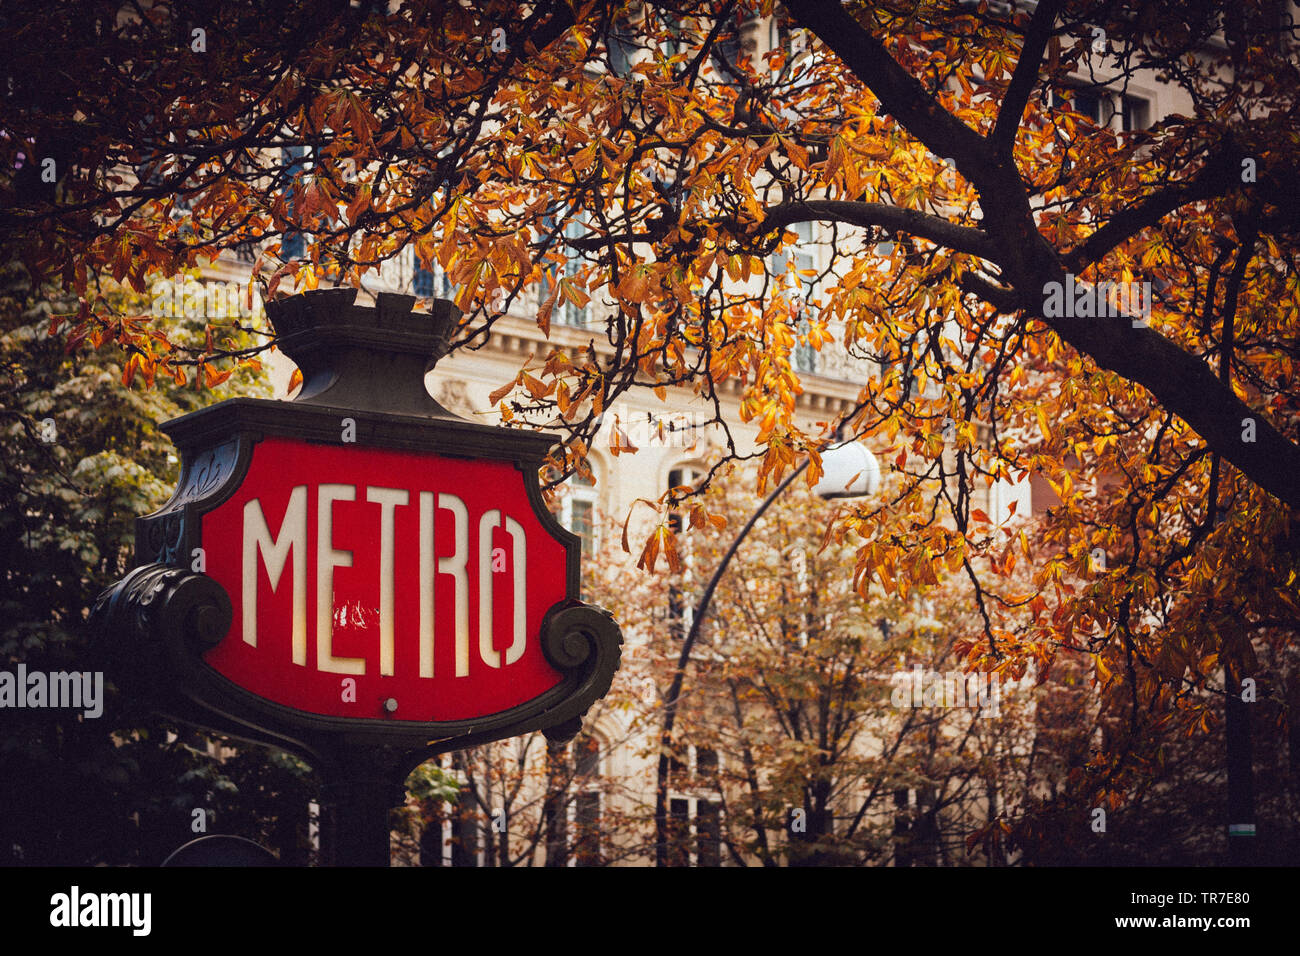 Parigi Metro sign in autunno Foto Stock